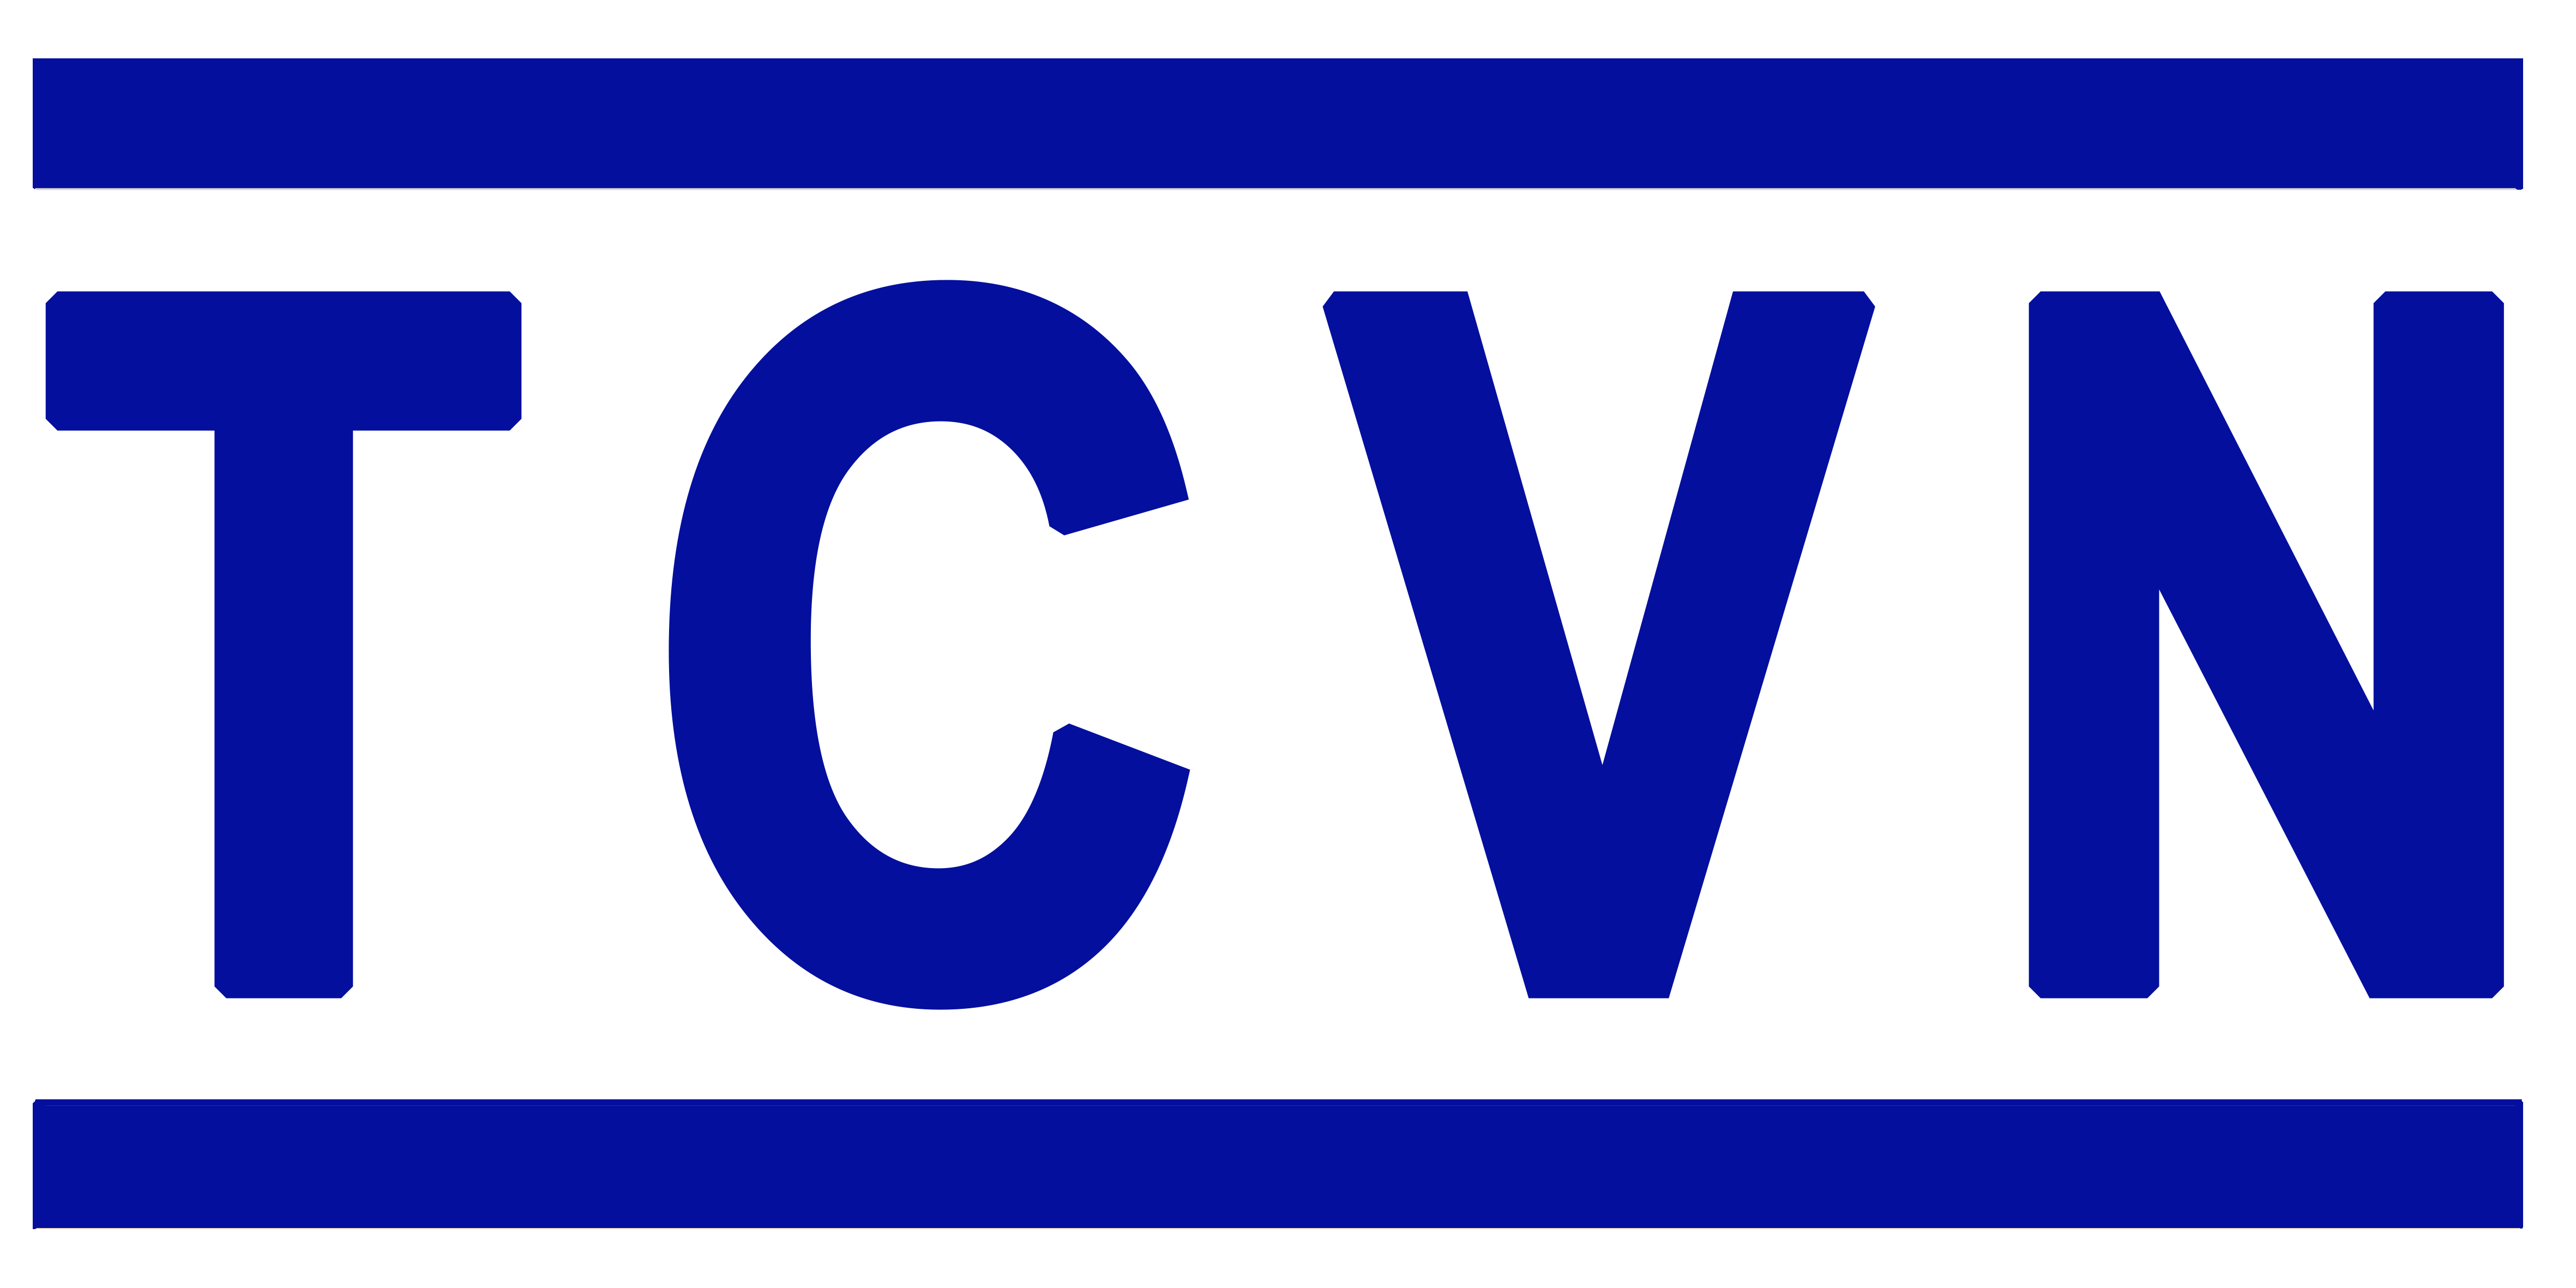 Danh mục tiêu chuẩn Quốc Gia (TCVN)  tháng 5 năm 2022